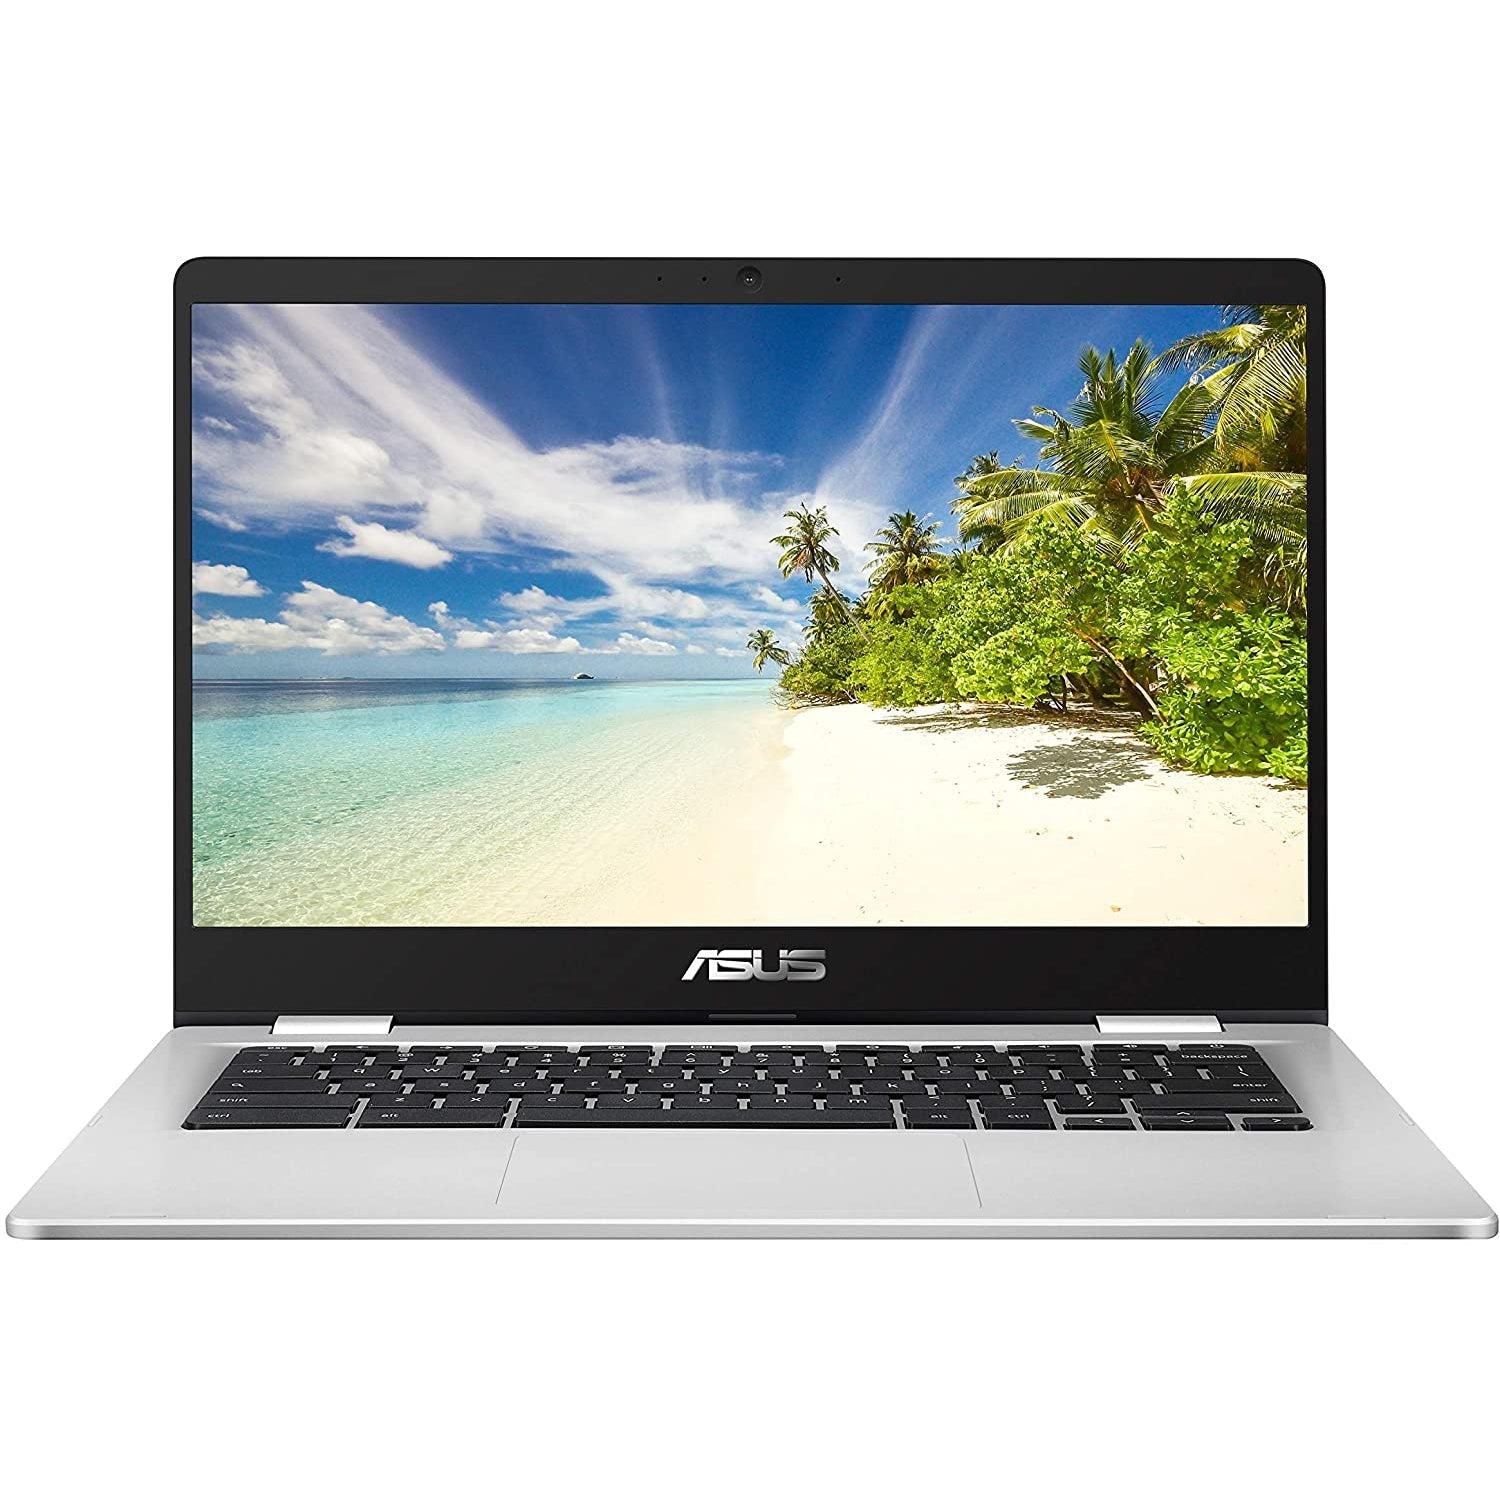 ASUS C423NA-BV0158 Laptop - Intel Celeron 4GB RAM 64GB eMMC 14" - Silver - Refurbished Pristine